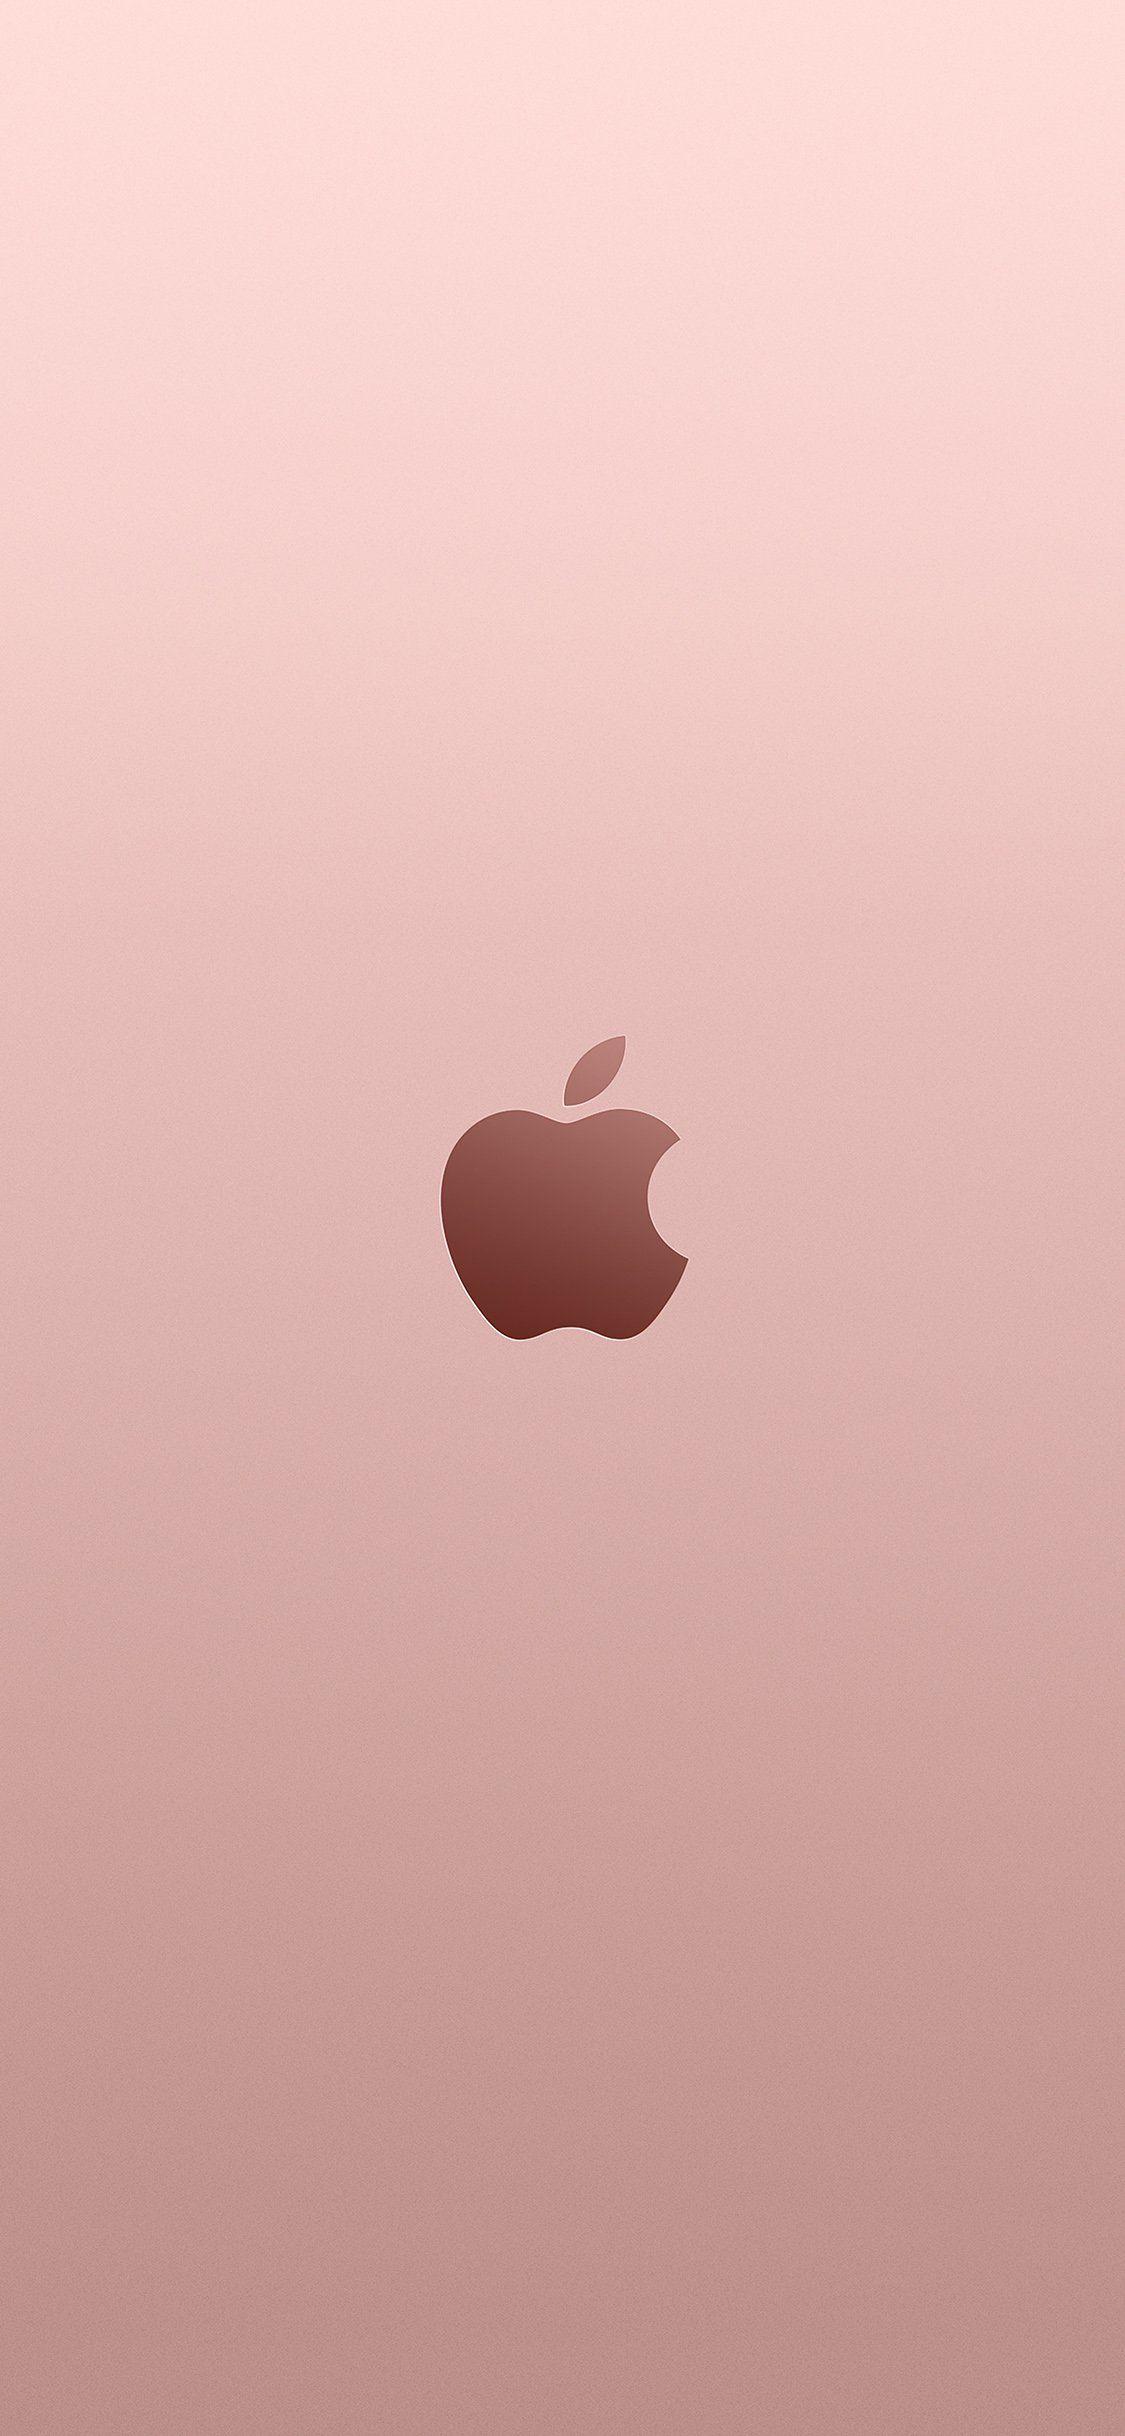 1125x2436 Hình nền nghệ thuật minh họa tối thiểu Apple Pink Rose Gold